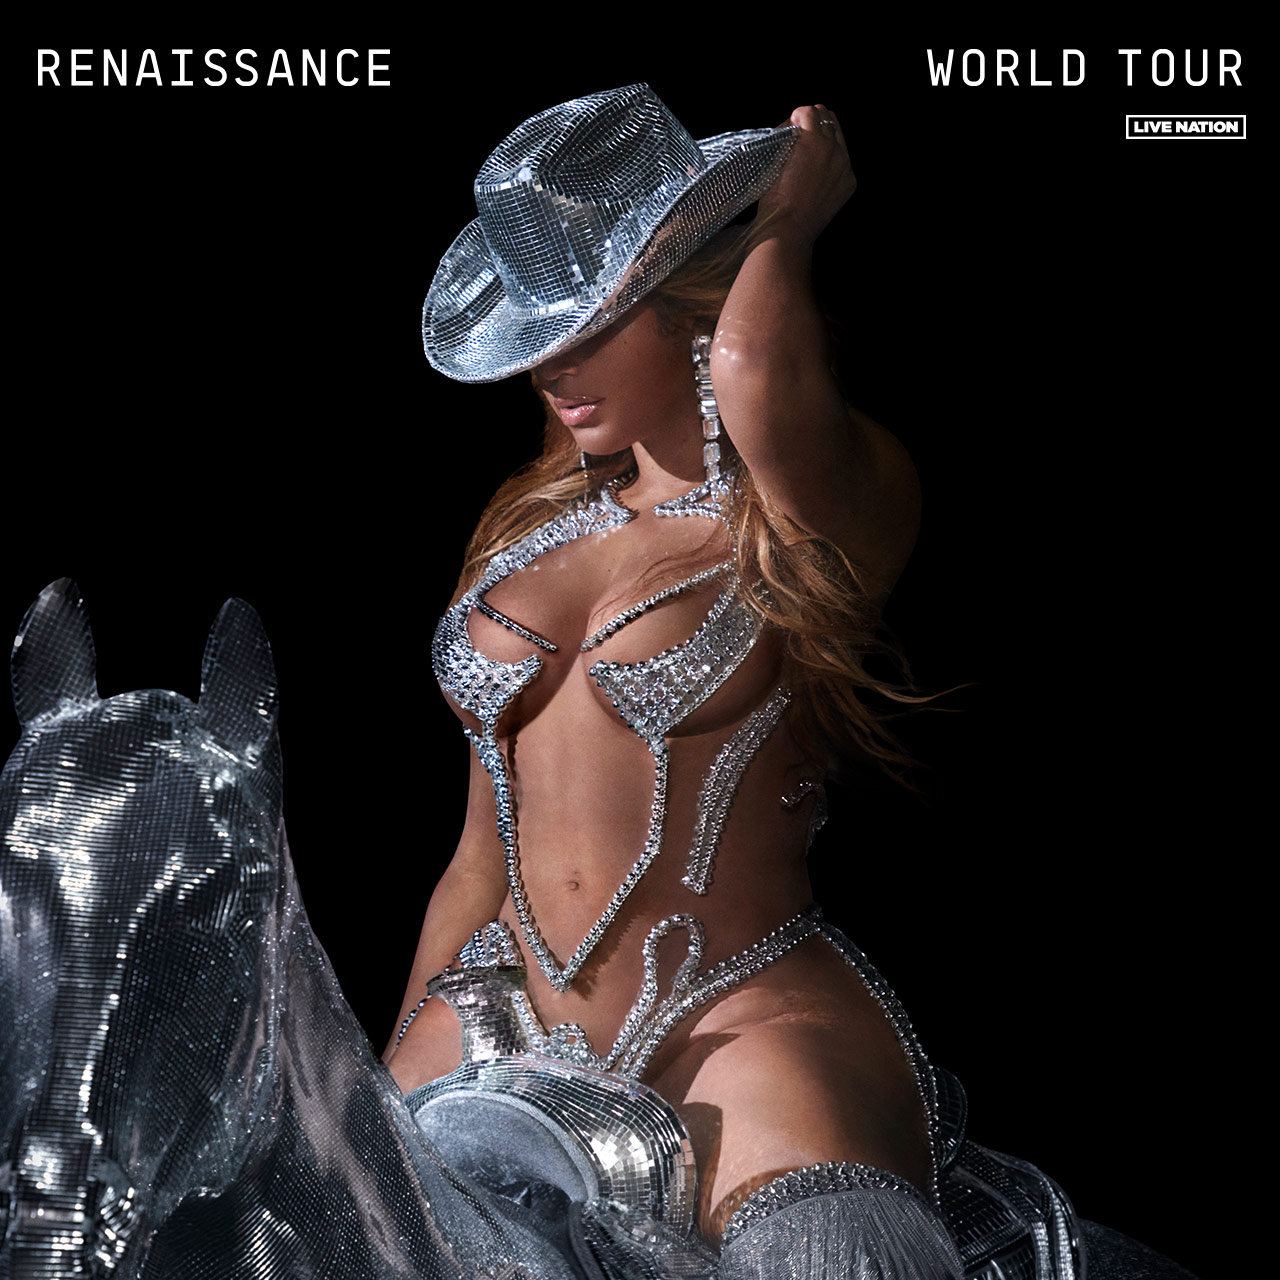 Renaissance World Tour